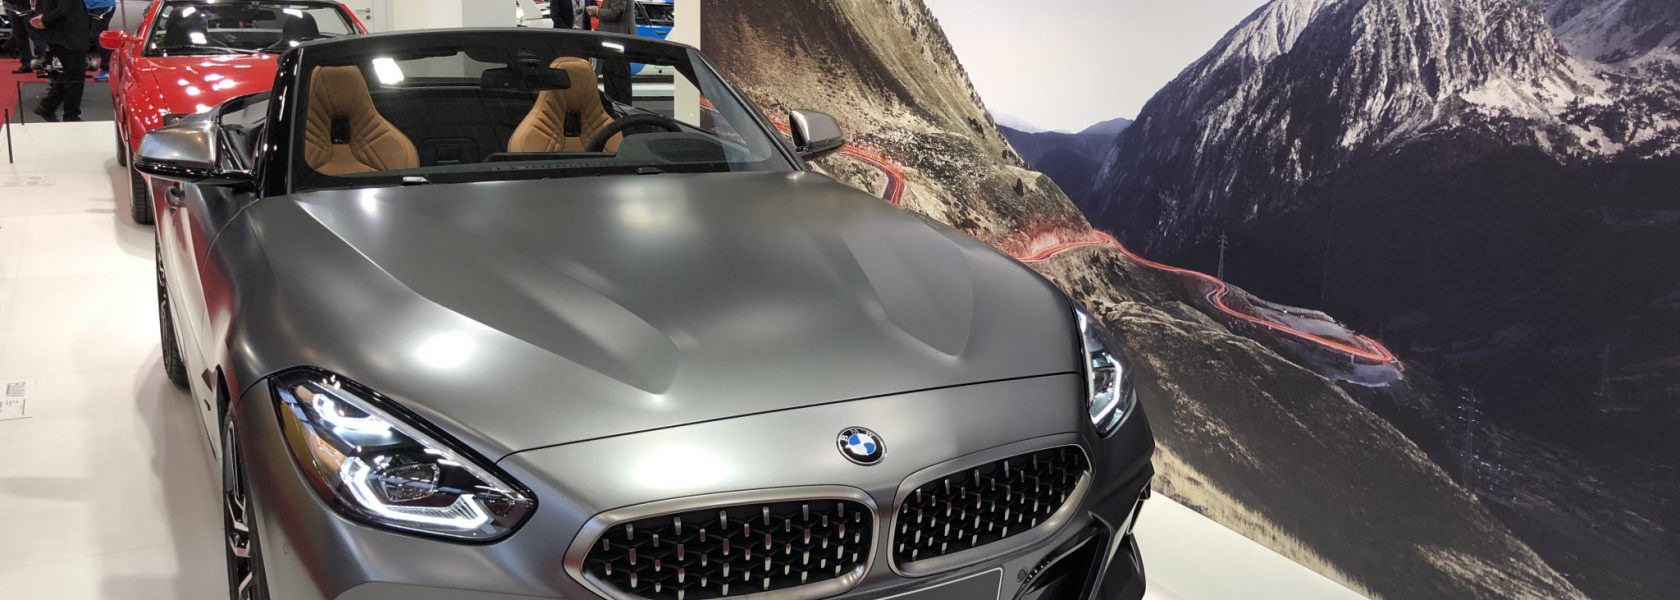 Z4 Collection BMW à Rétromobile 2019